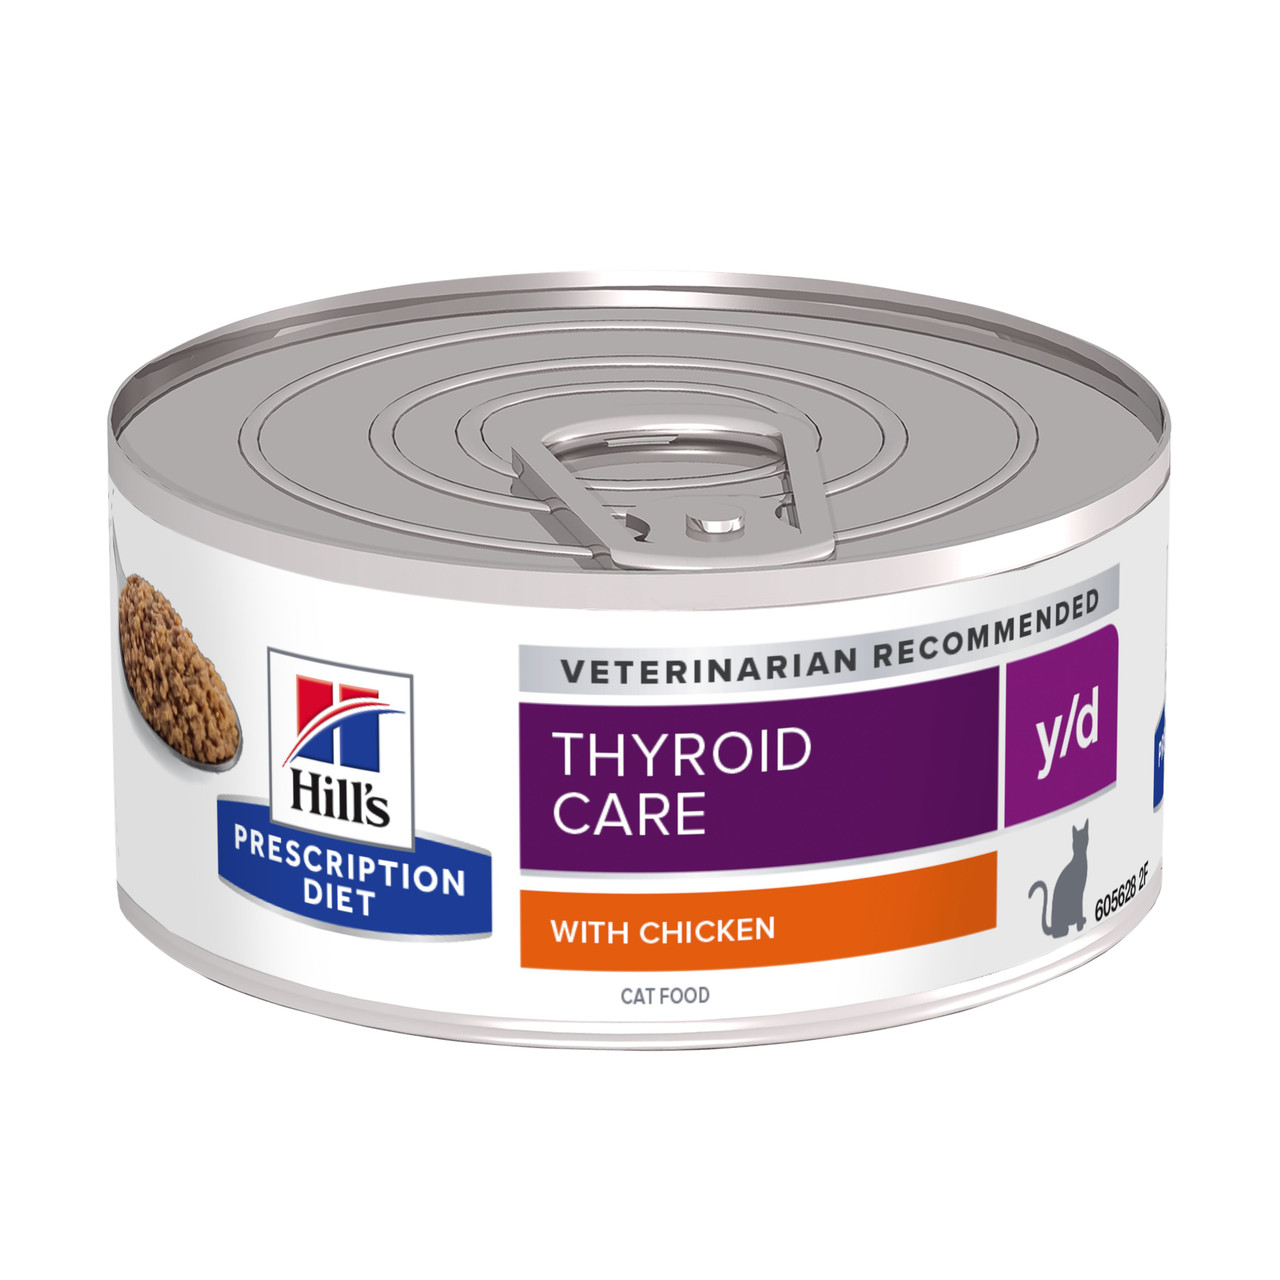 Prescription Diet y/d Thyroid Care Våtfoder för Katt med Kyckling – 24 st x 156 g